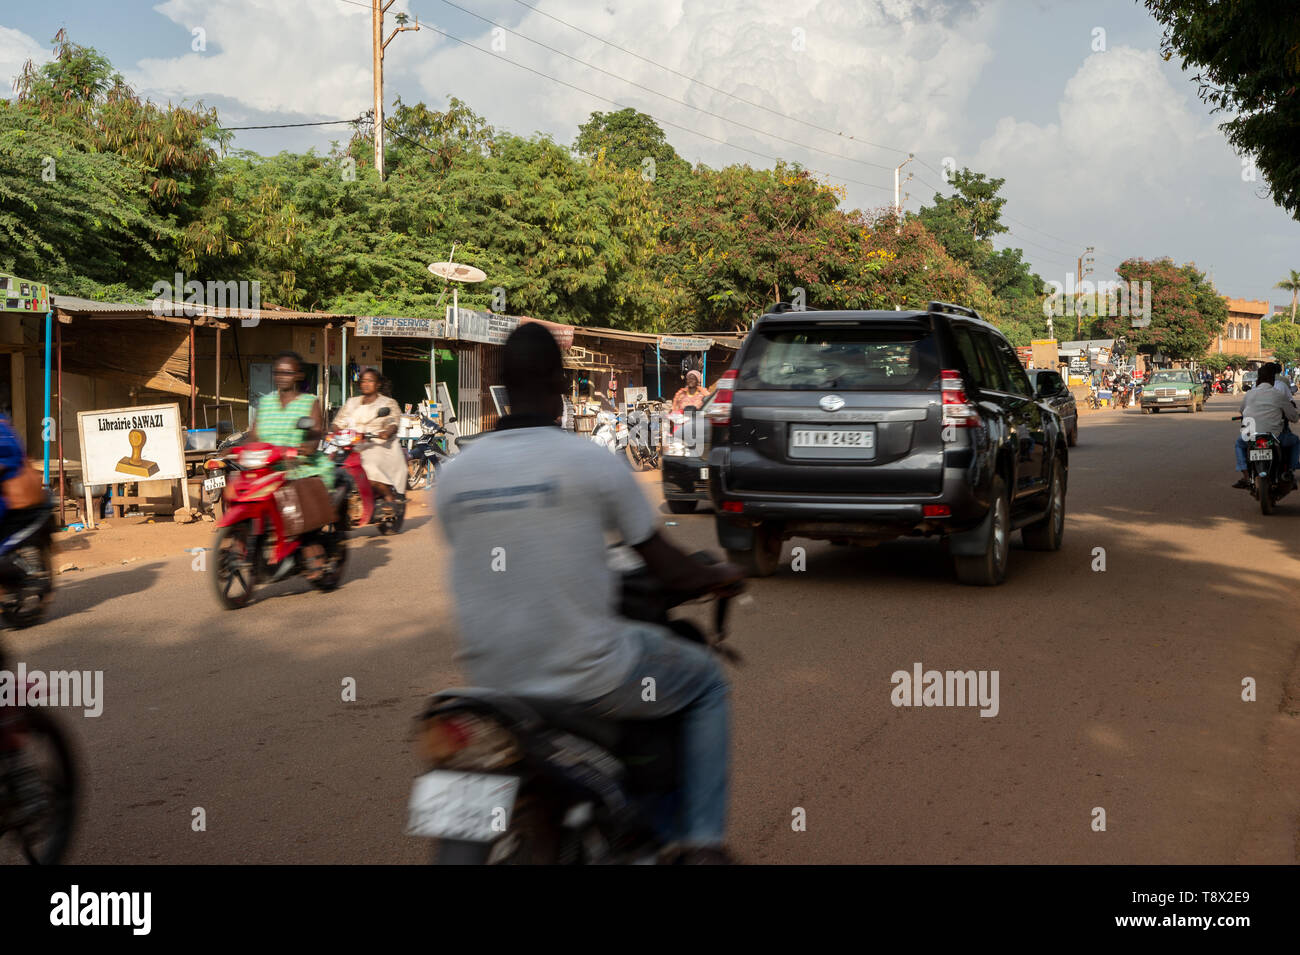 Les gens dans les rues de Ouagadougou, capitale du Burkina Faso, un des pays les plus pauvres de l'Afrique Banque D'Images